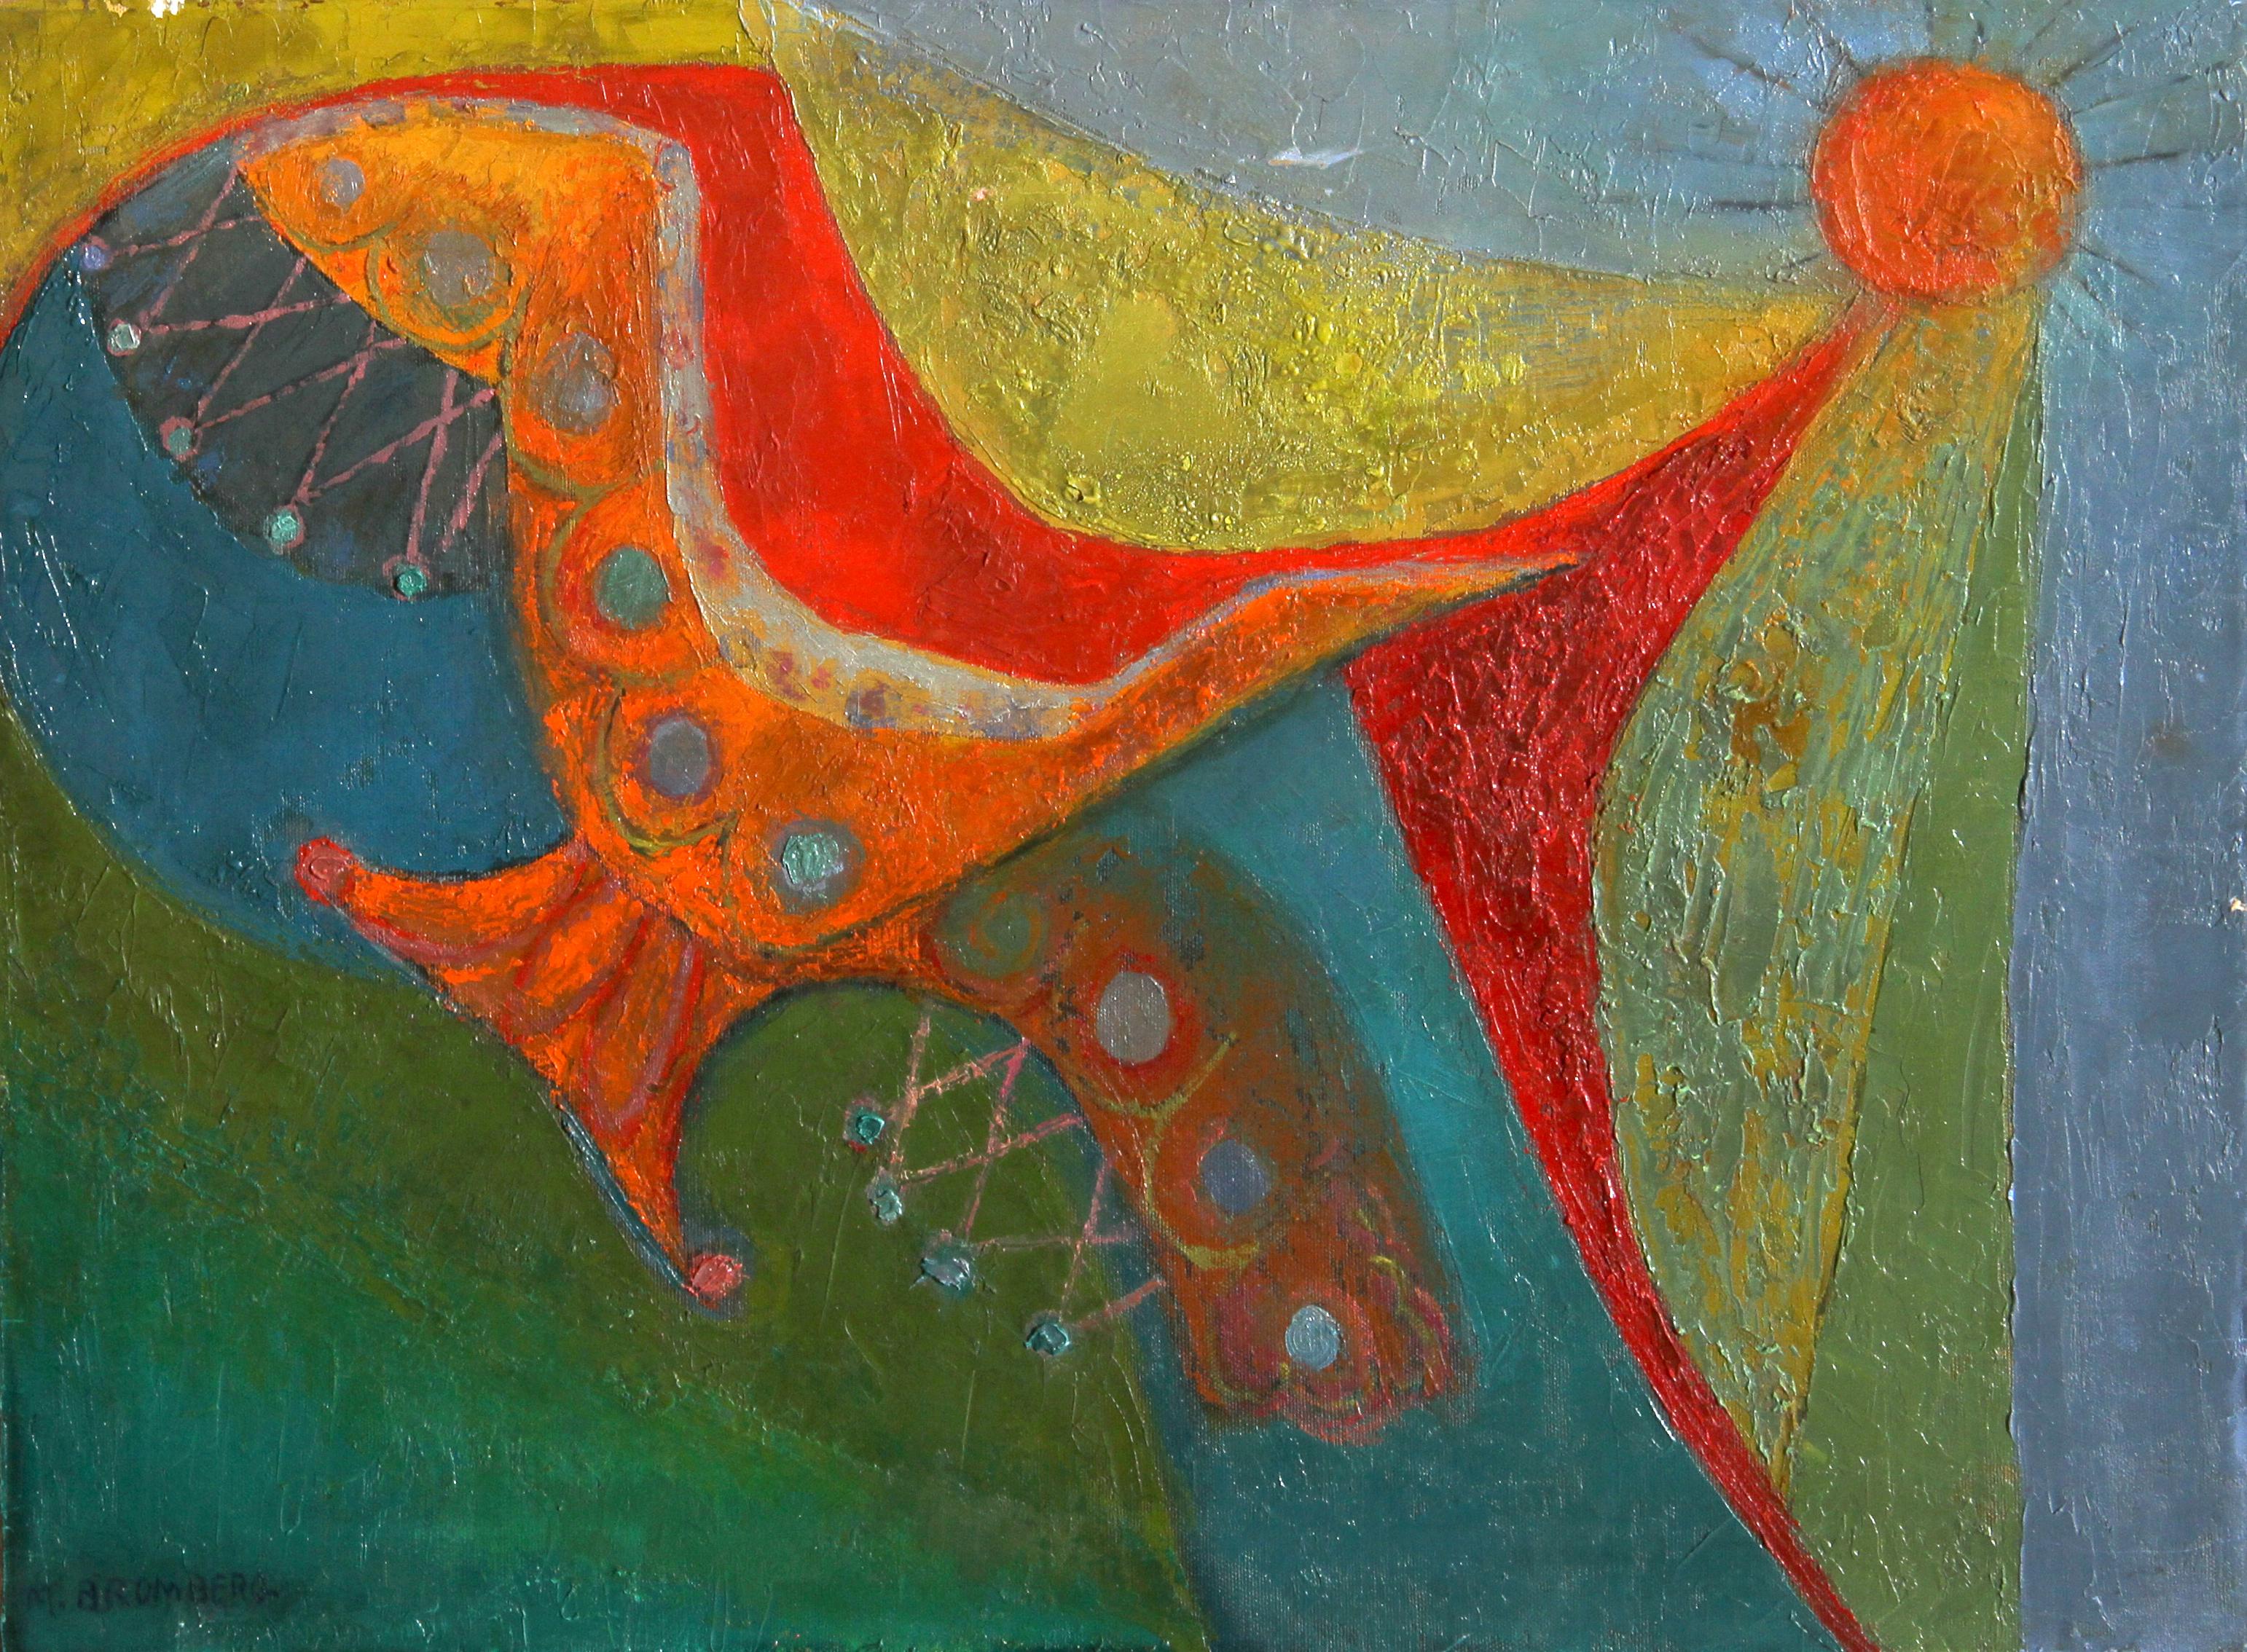 Artistics : Miriam Bromberg, Américaine XXème
Titre :  Oiseau et soleil
Moyen :  Huile sur toile, signée à gauche.
Taille :  18  x 24 in. (45.72  x 60.96 cm) 